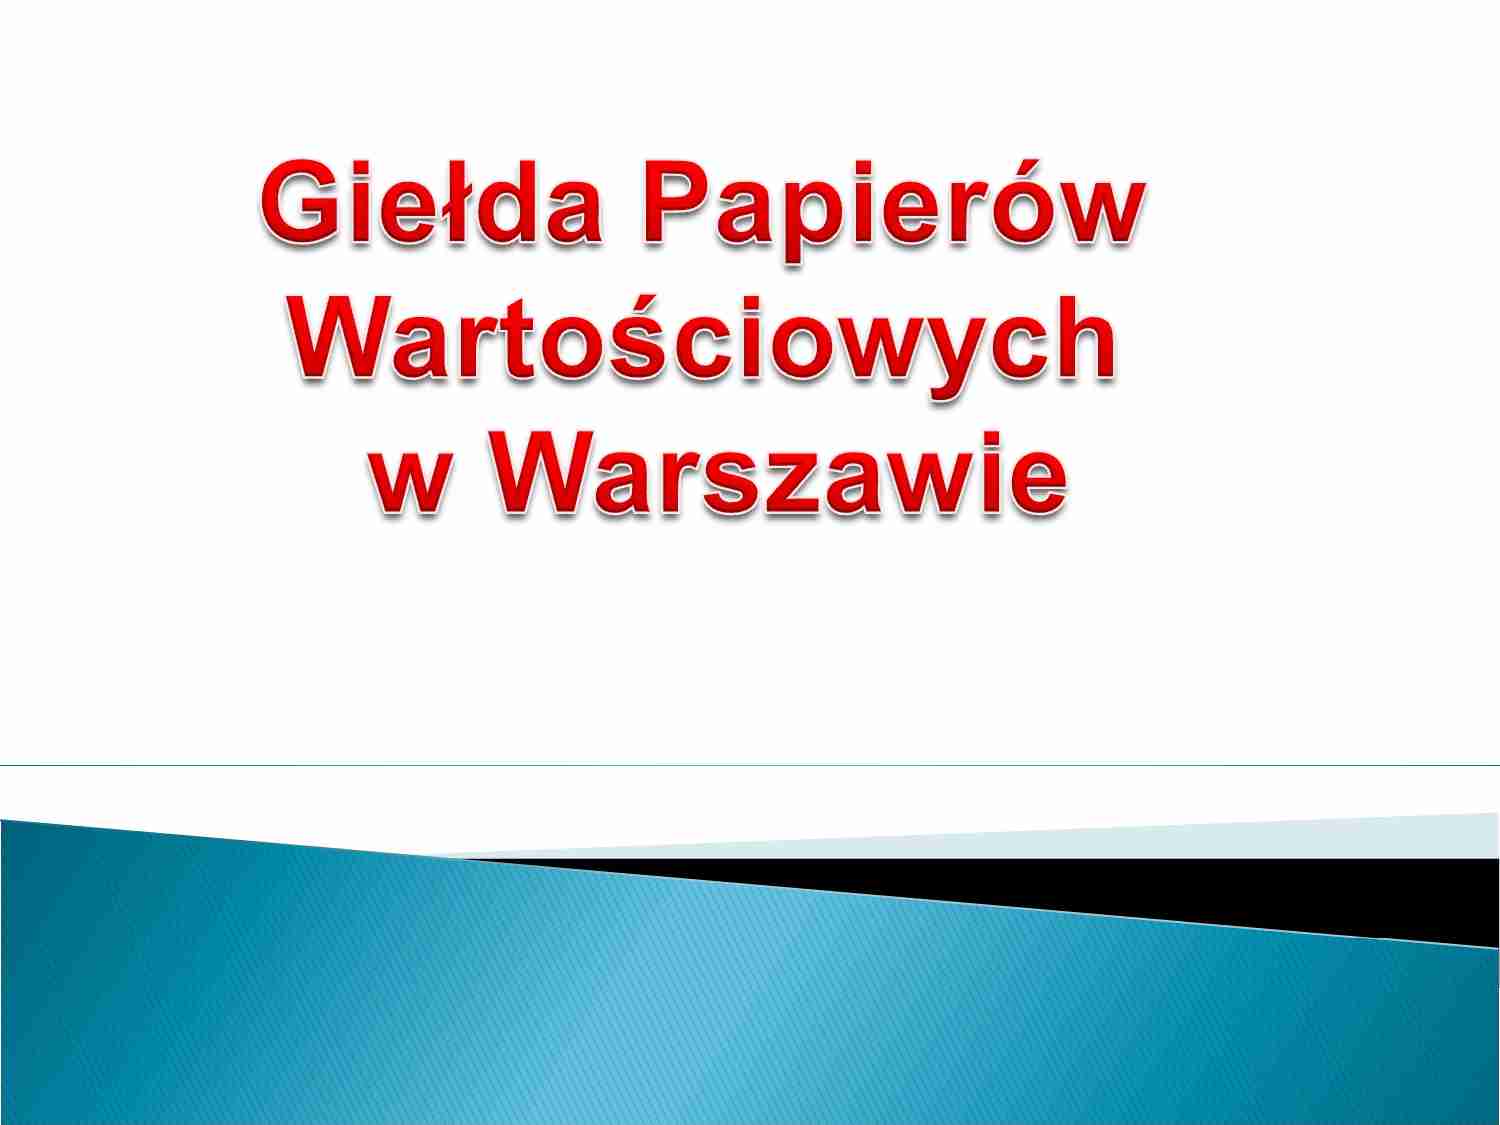 Giełda Papierów Wartościowych w Warszawie - siedziba GPW, władze GPW - strona 1